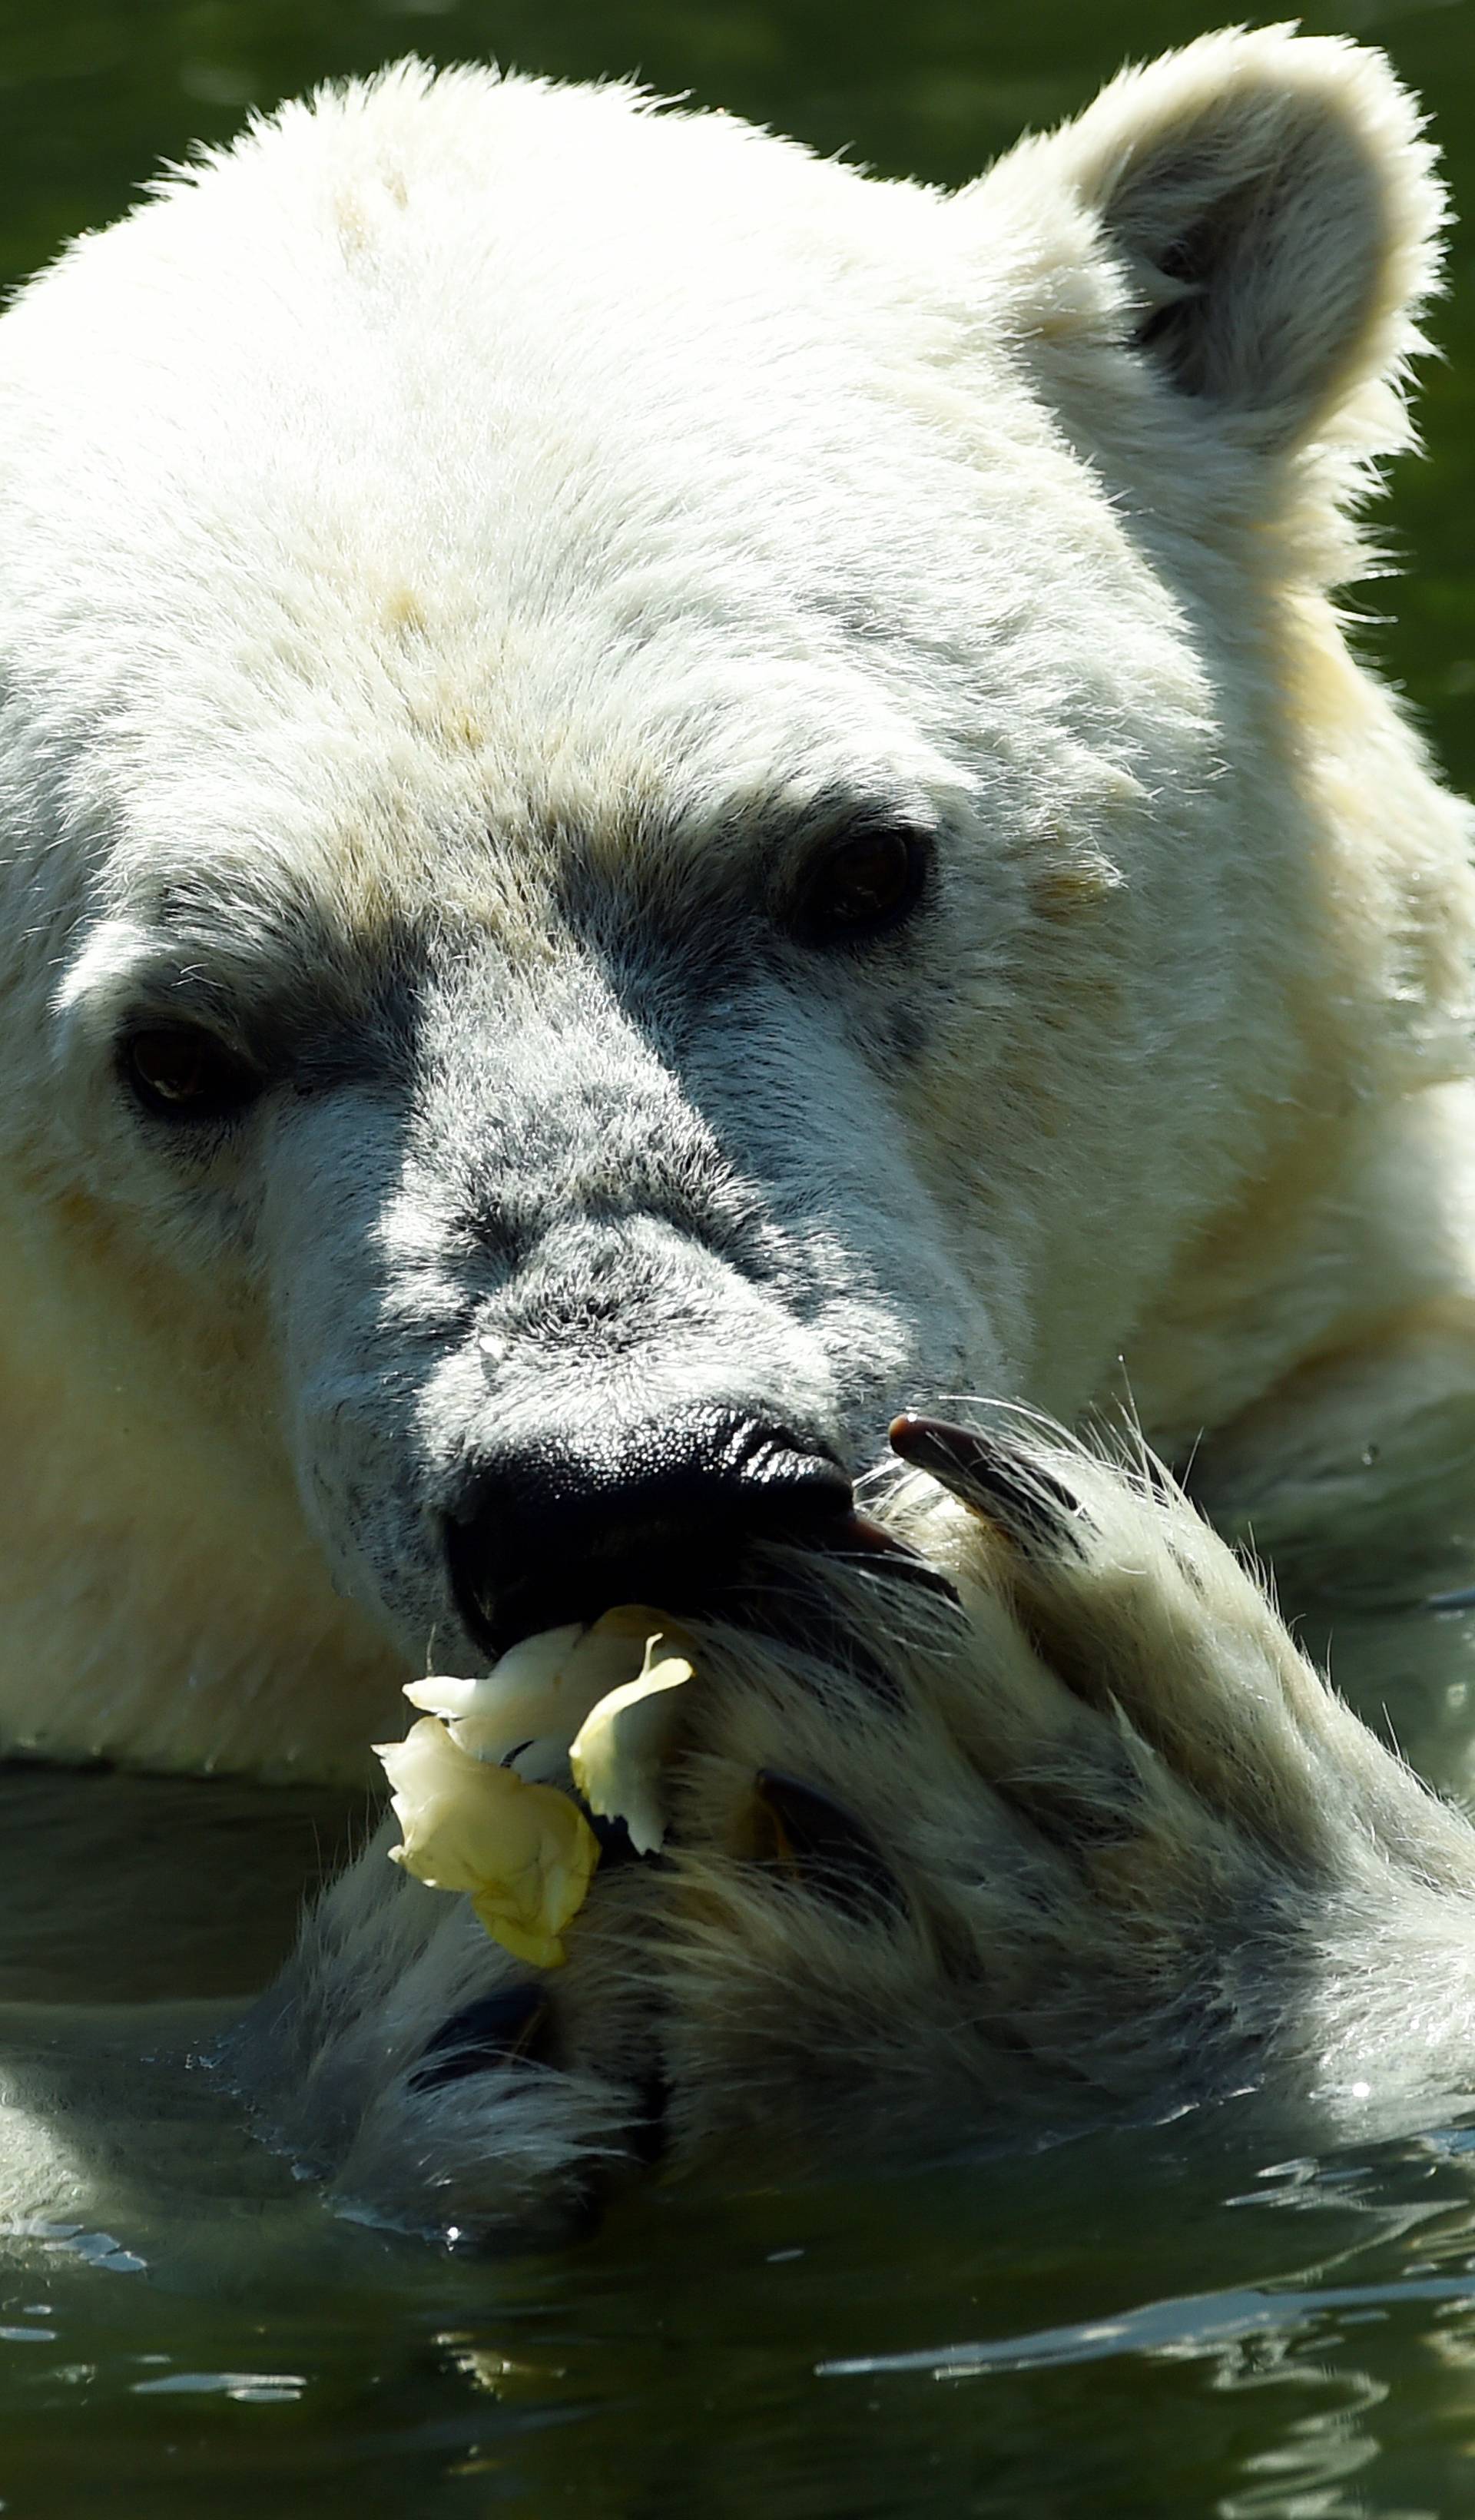 Polar bear Tonja cooling down